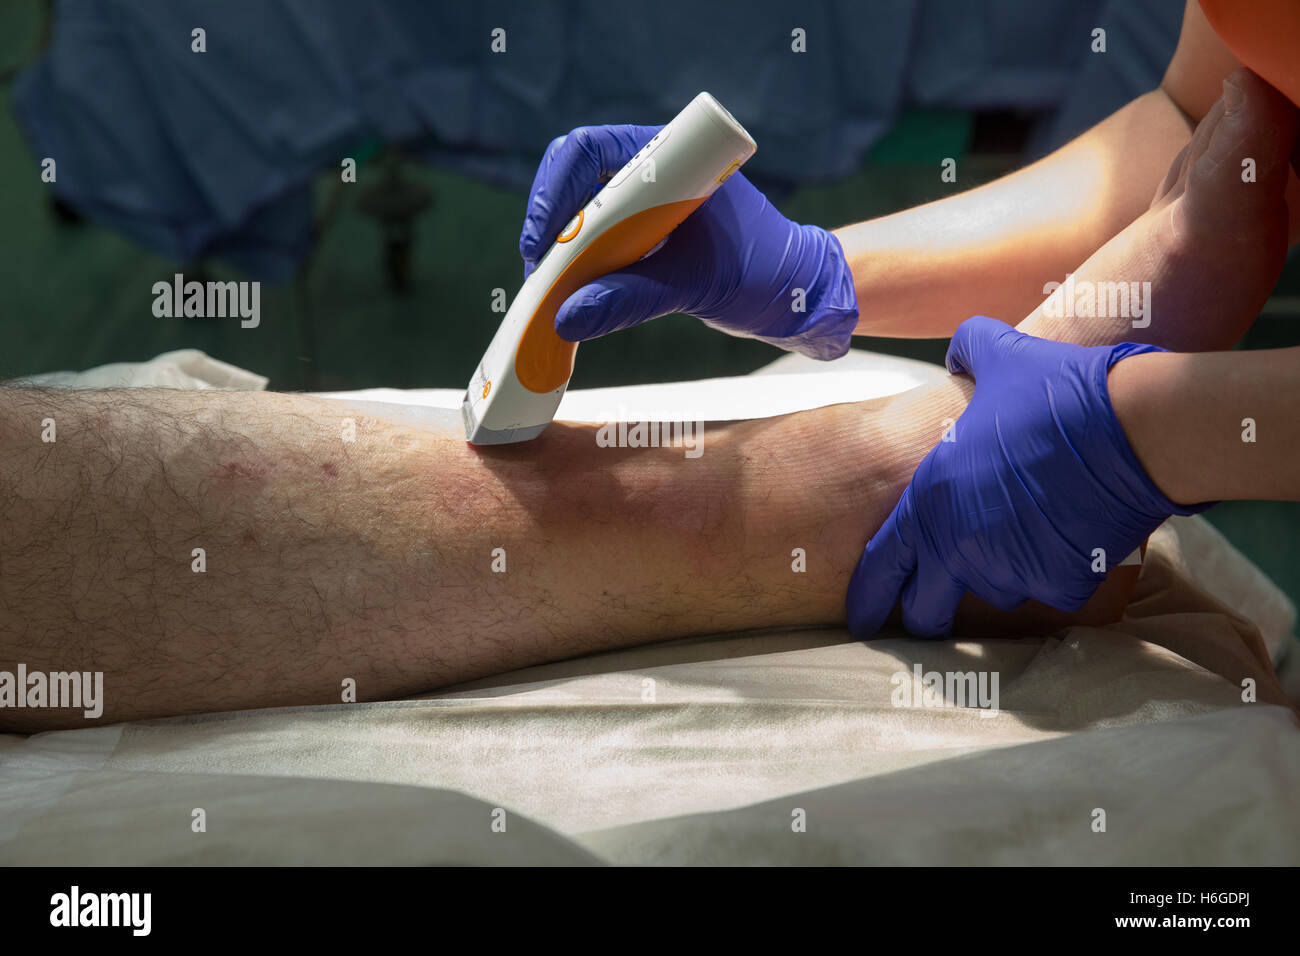 Vorbereitung des Patienten auf offenen Reposition und Osteosynthese Knöchel-Sprunggelenk-Operation. Das Bein des Patienten wird rasiert Stockfoto